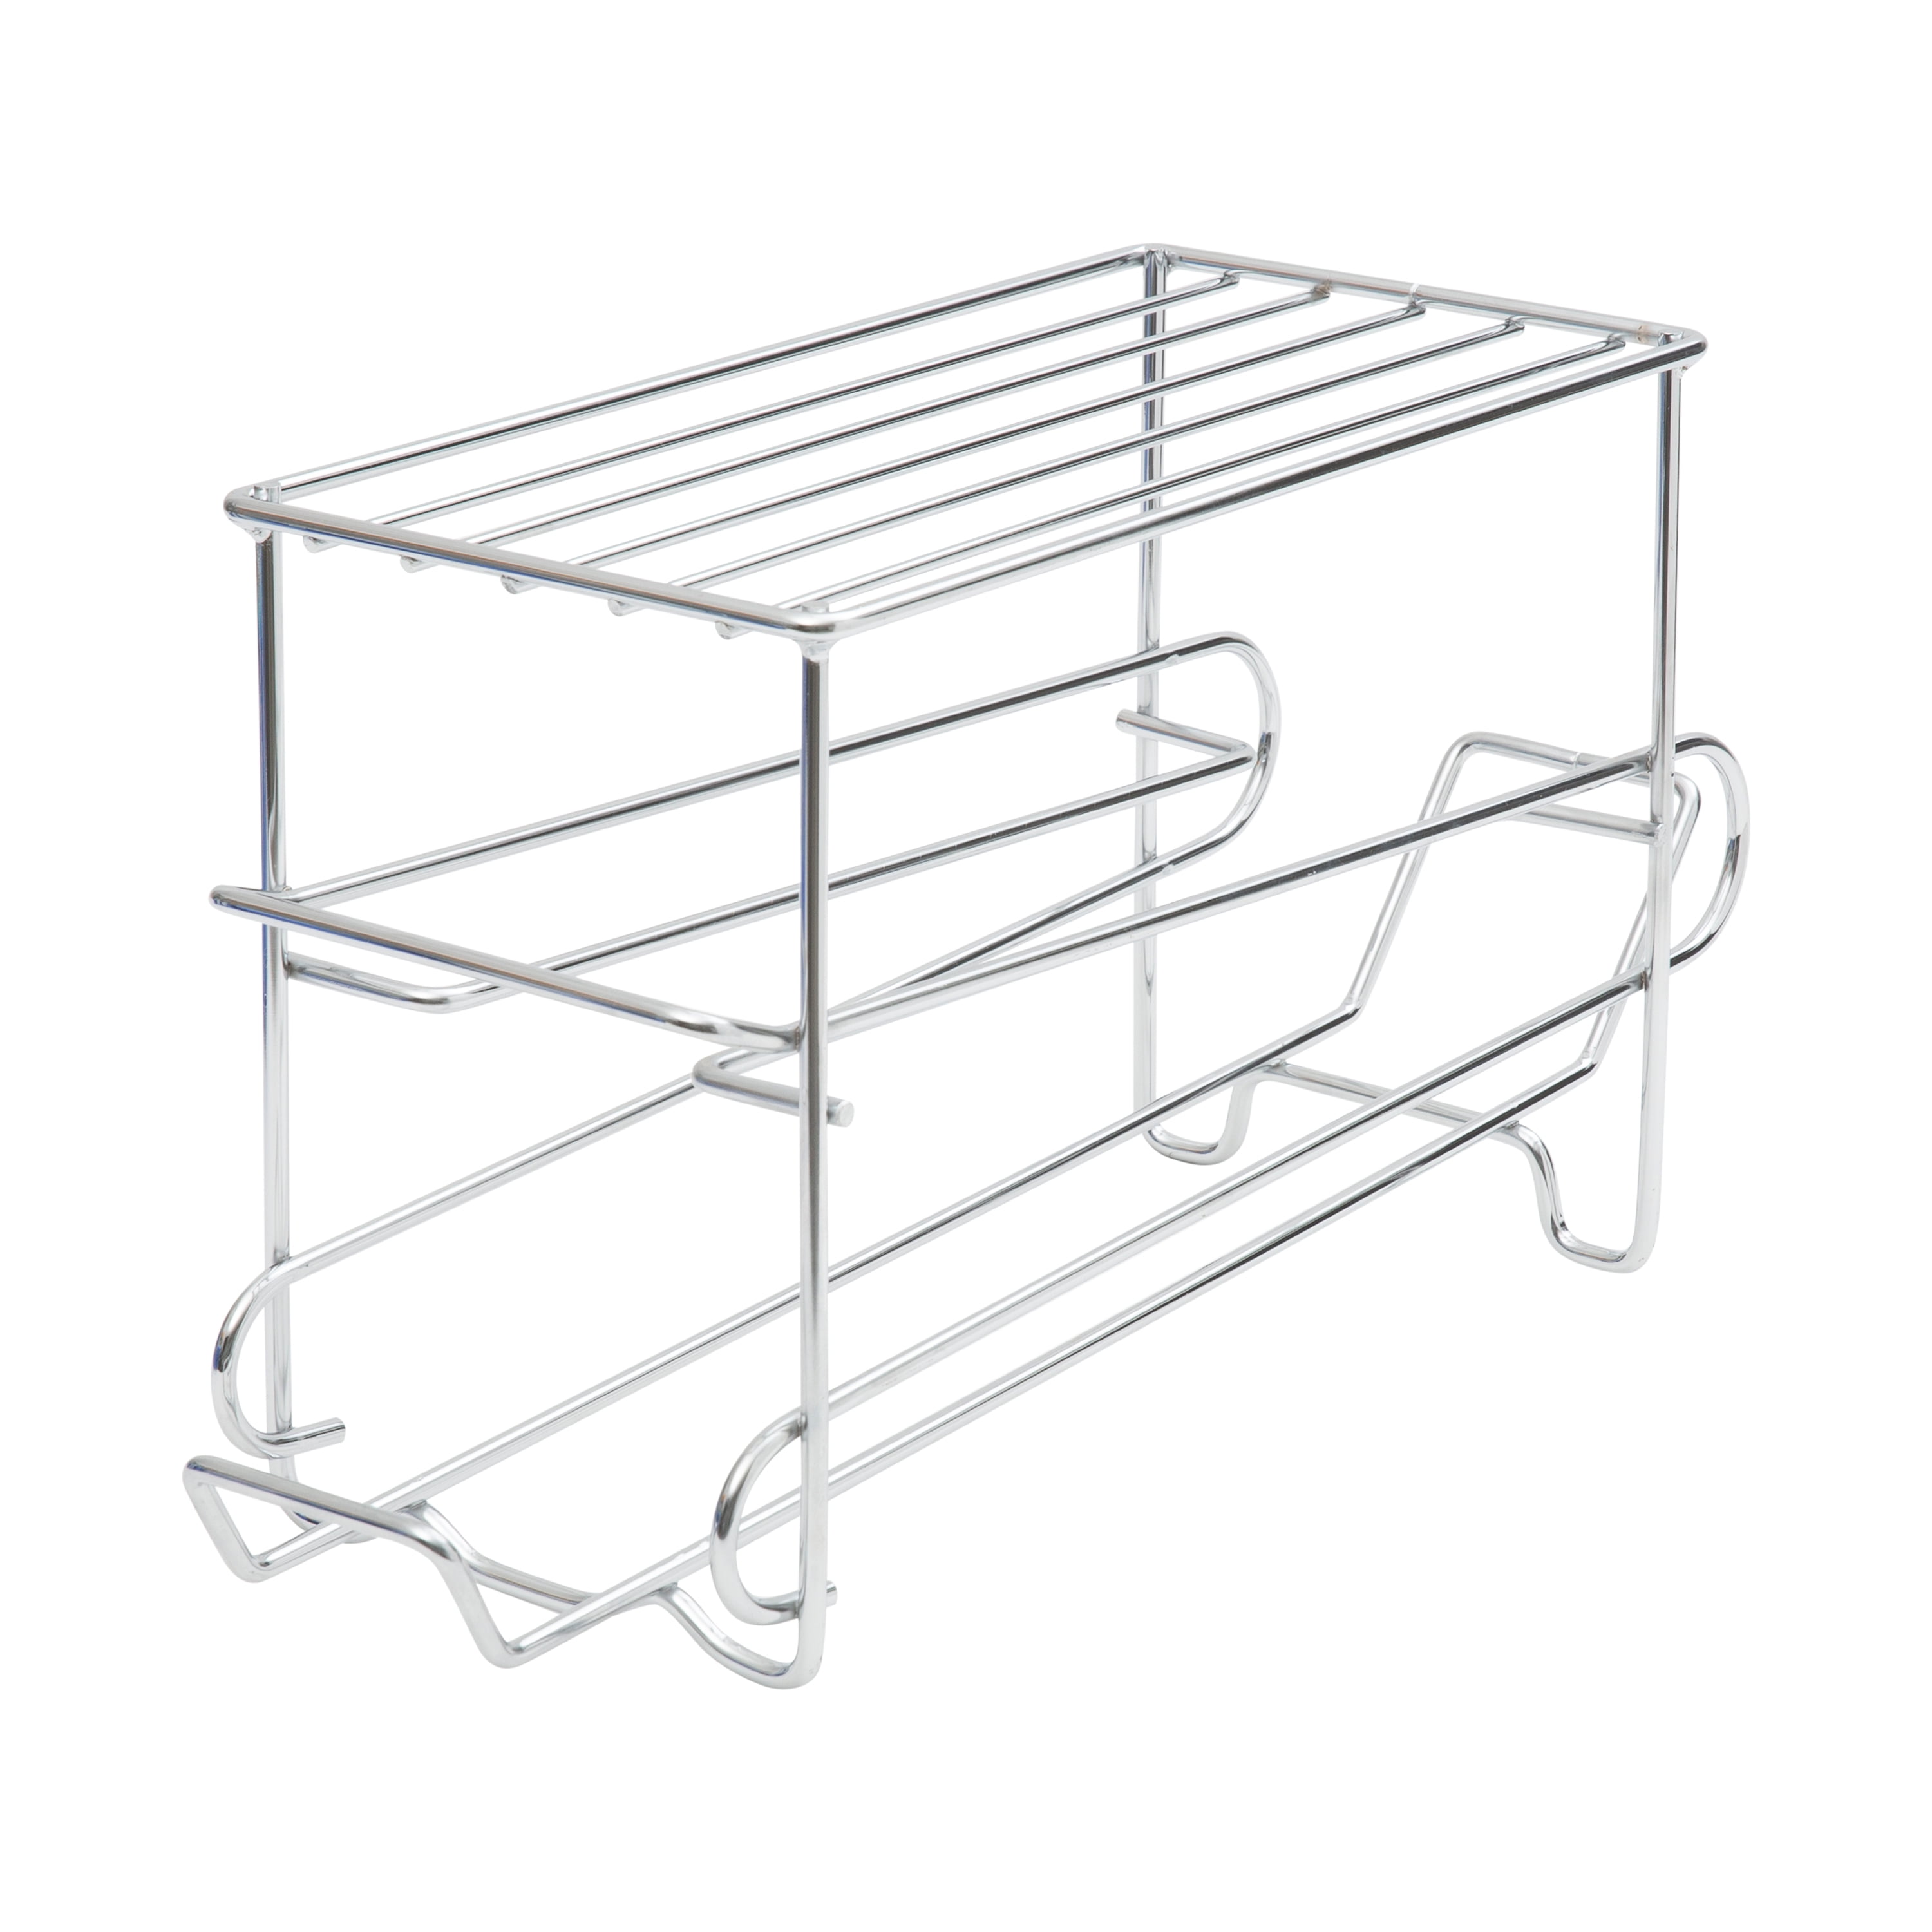 13 Chrome InterDesign Classico Kitchen Cabinet Storage Organizer for Skillets Pans